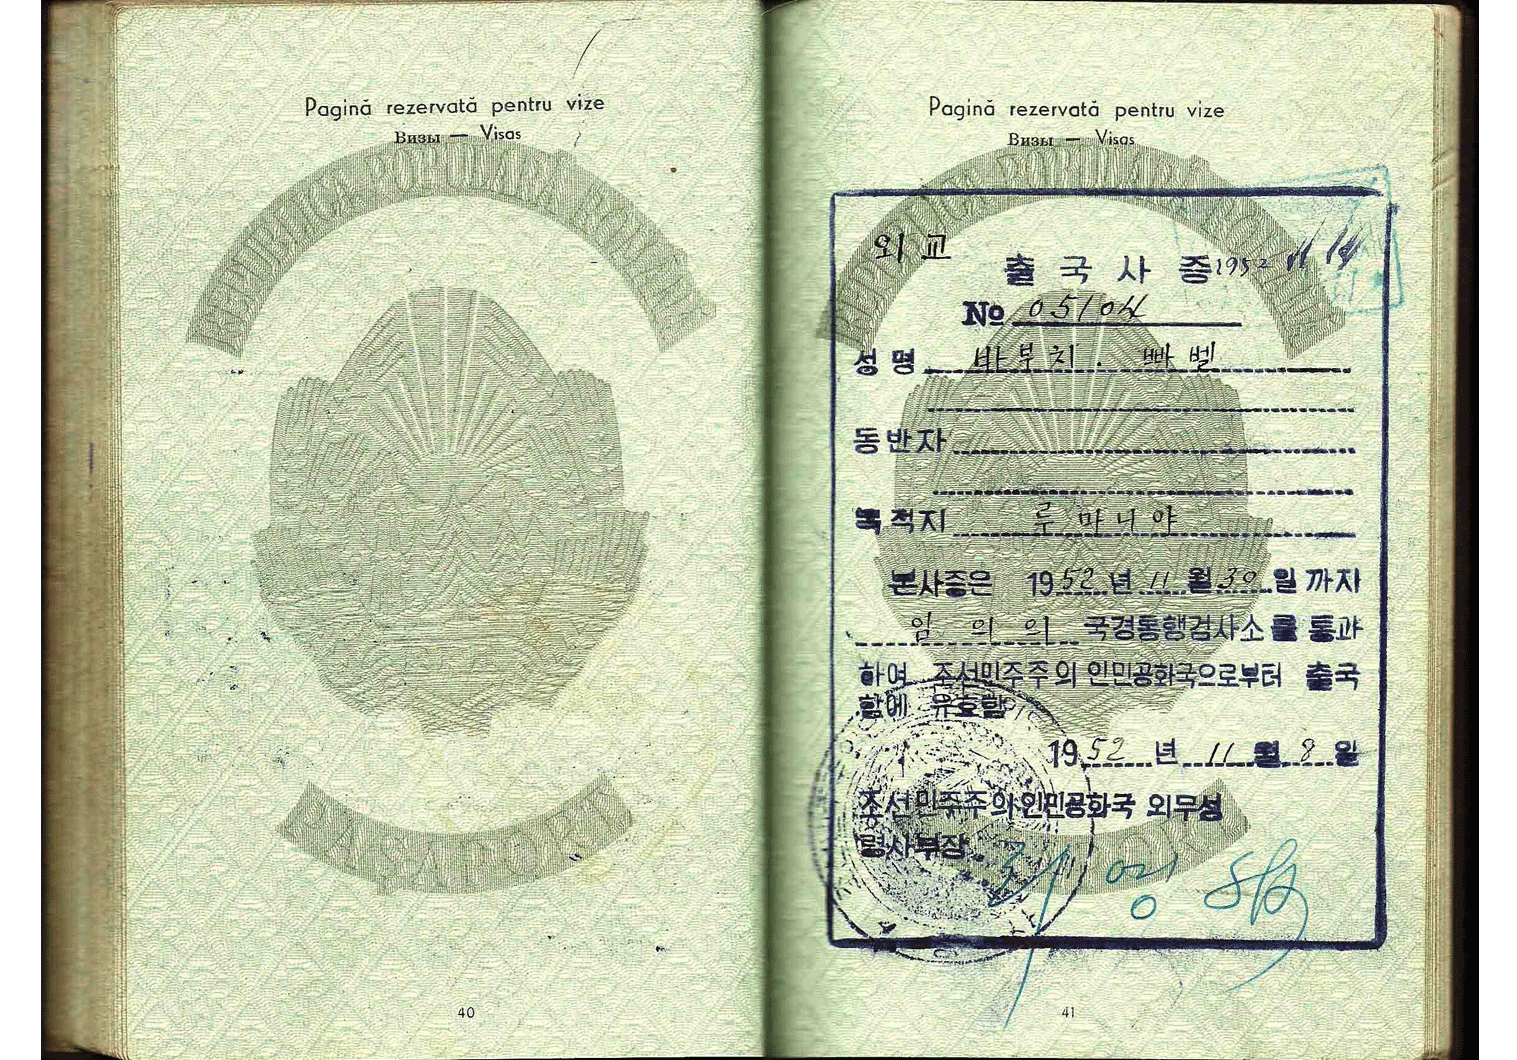 1951 North Korean diplomatic visa from Pyongyang